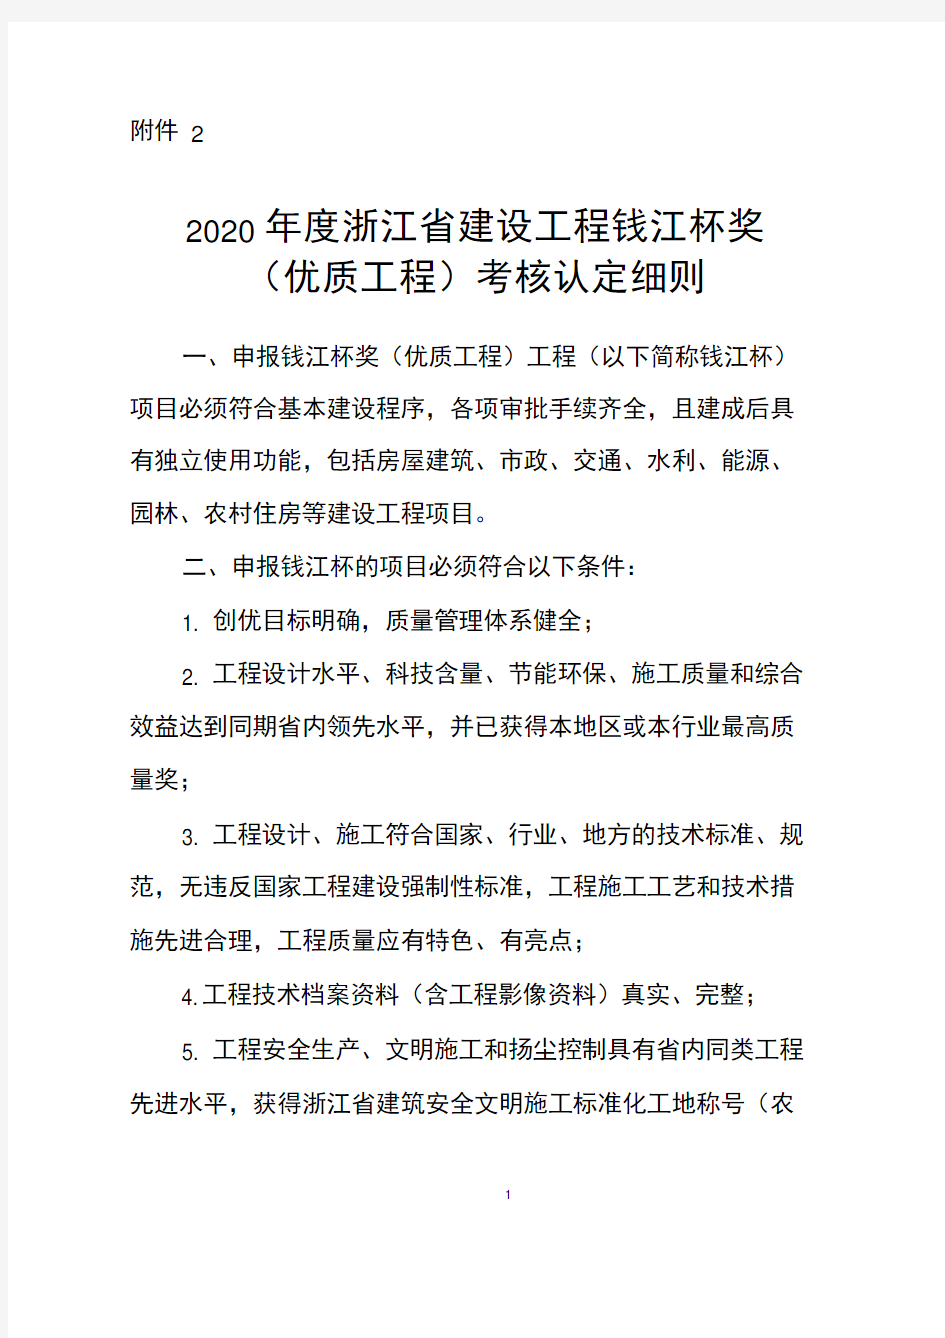 2020年度浙江省建设工程钱江杯考核认定细则